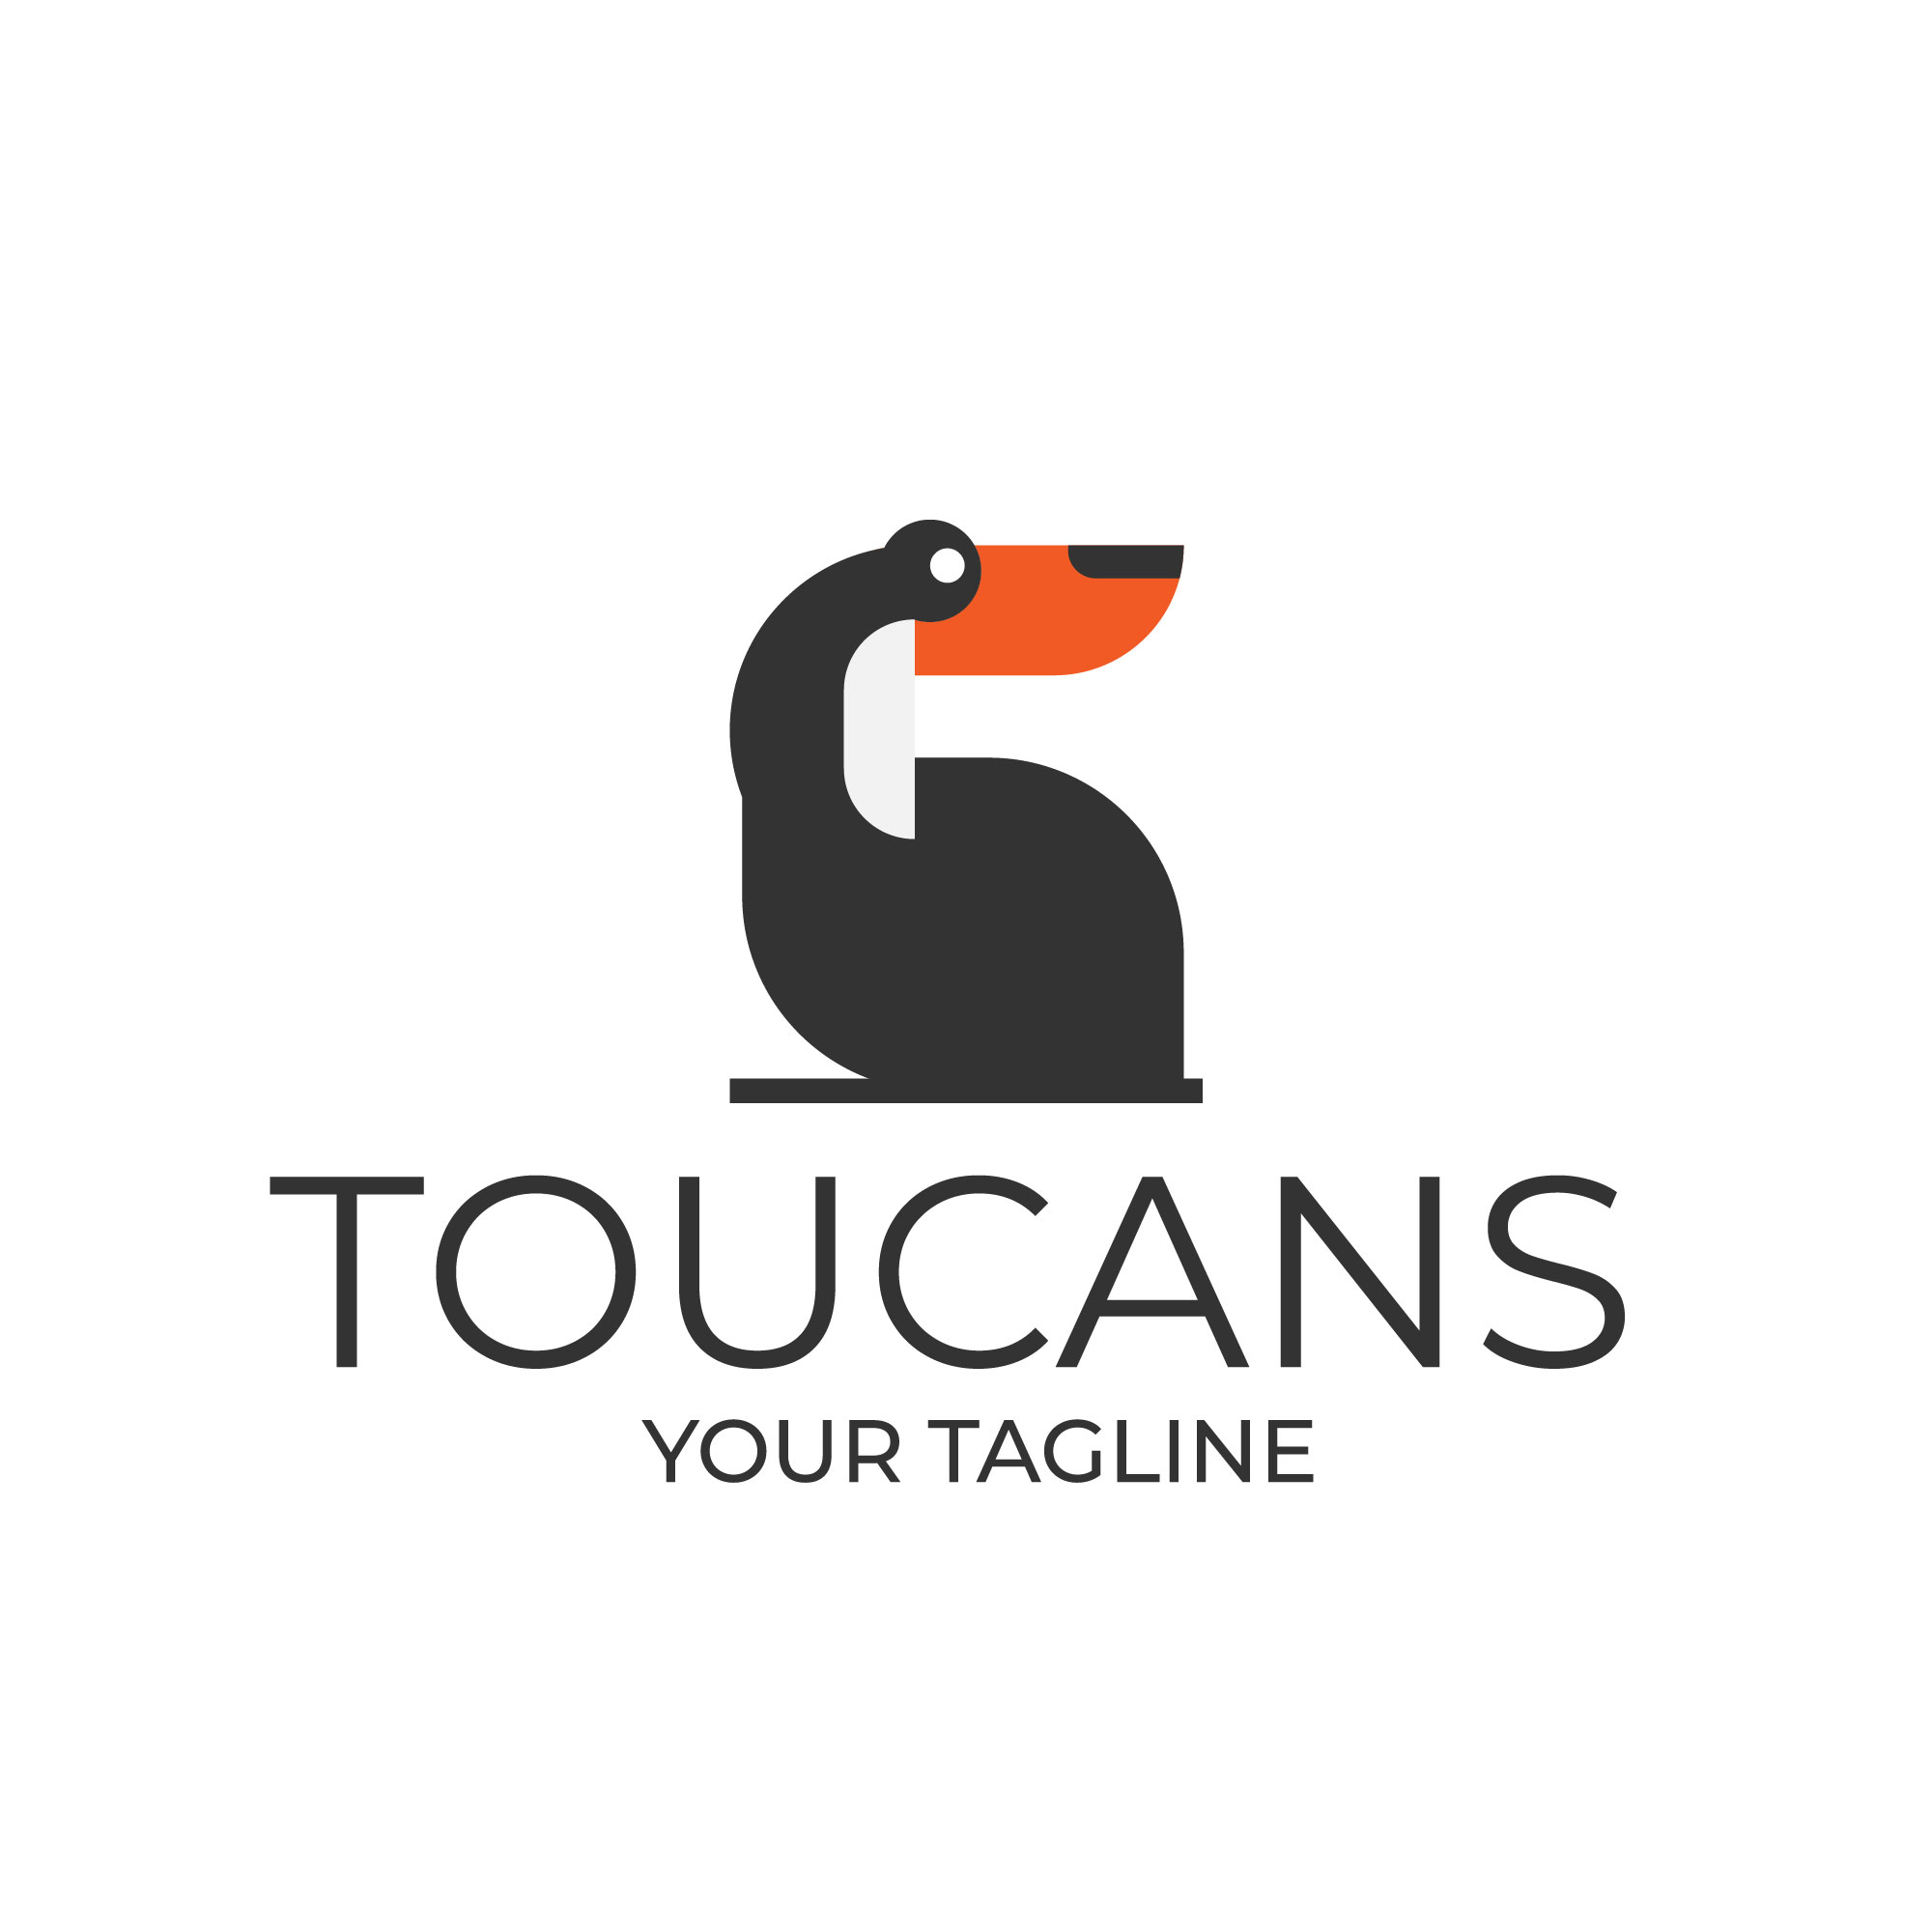 Toucans logo designs